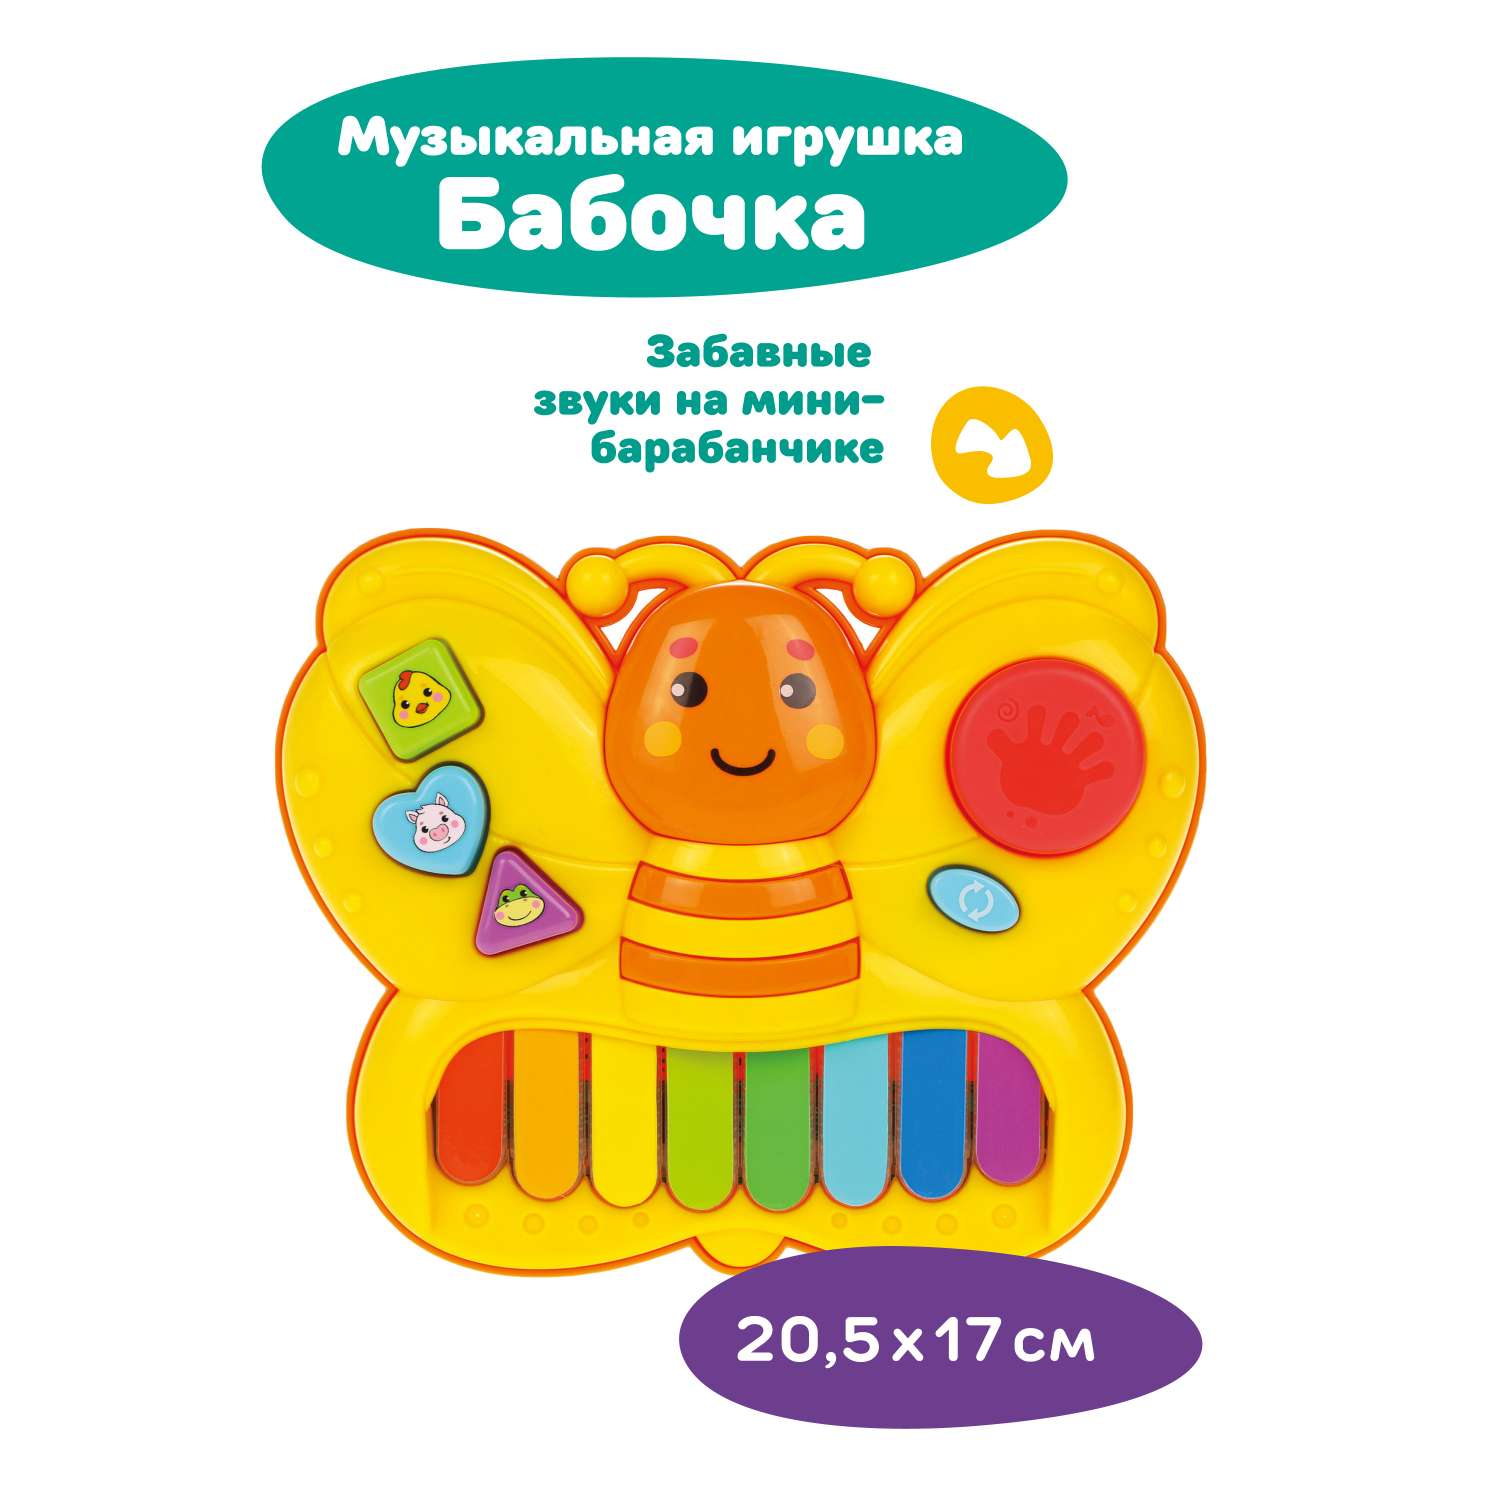 Музыкальная игрушка Жирафики Бабочка Свет и русские песенки - фото 1